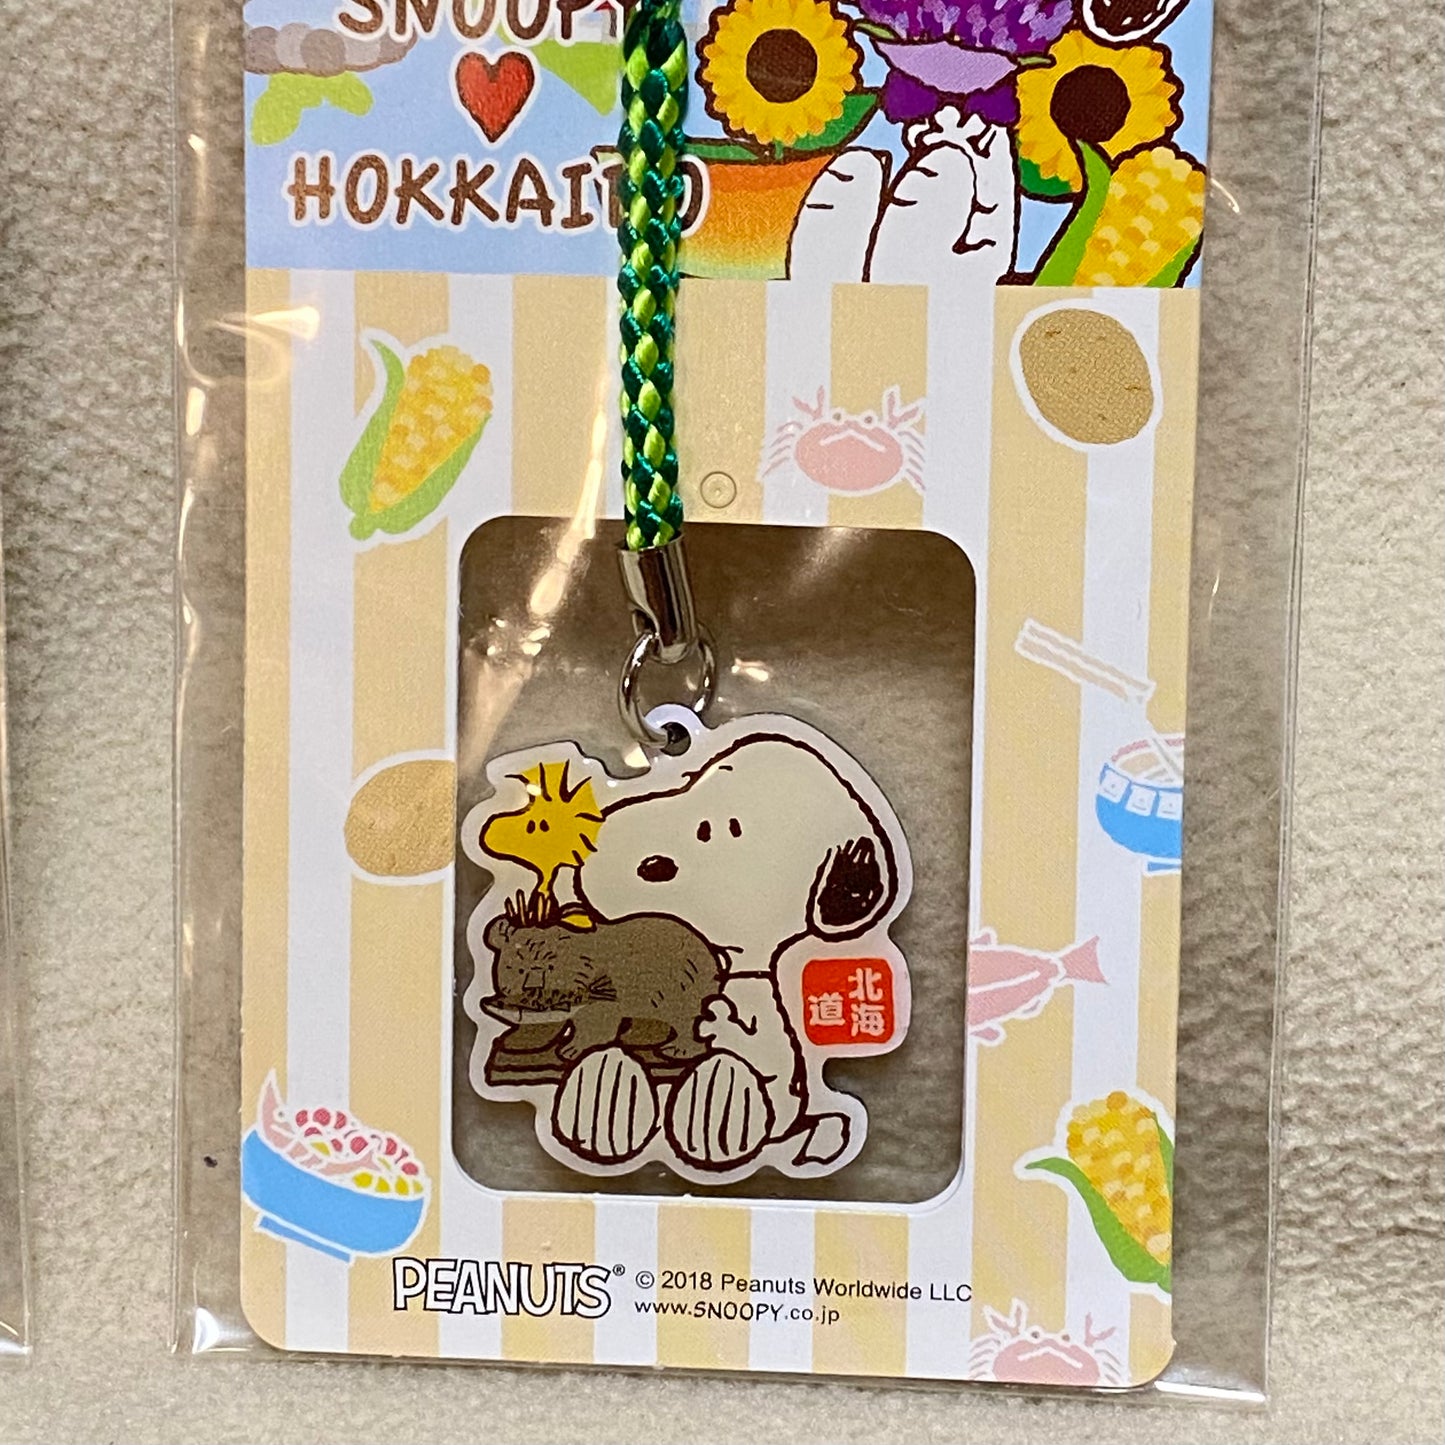 【現貨】Snoopy ❤️ Hokkaido 小掛飾